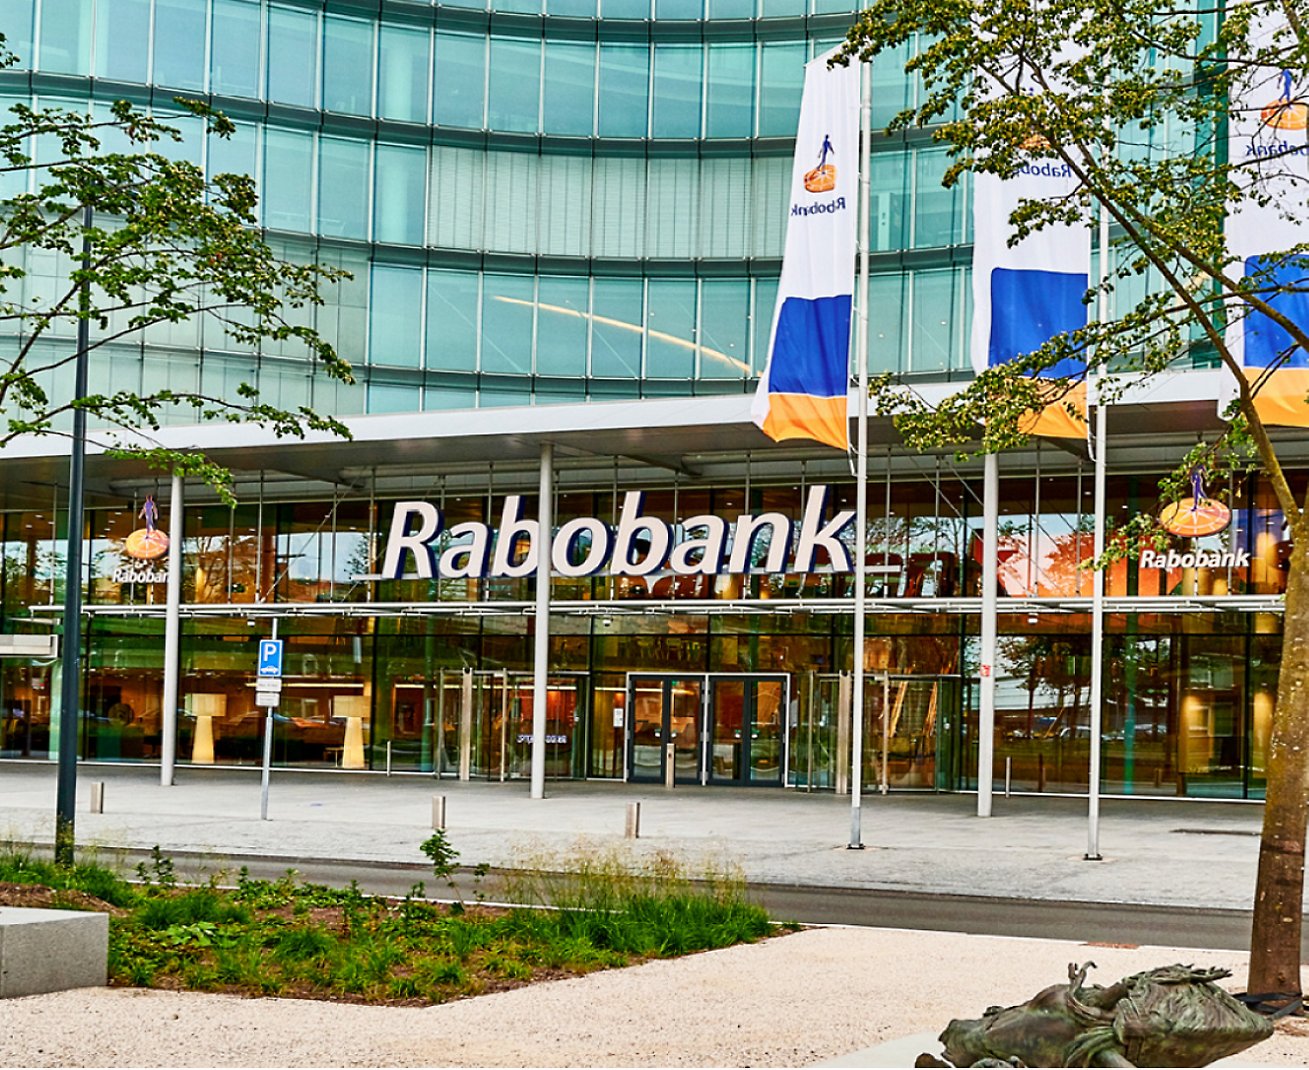 בניין עם סימן שבו כתוב Rabobank.